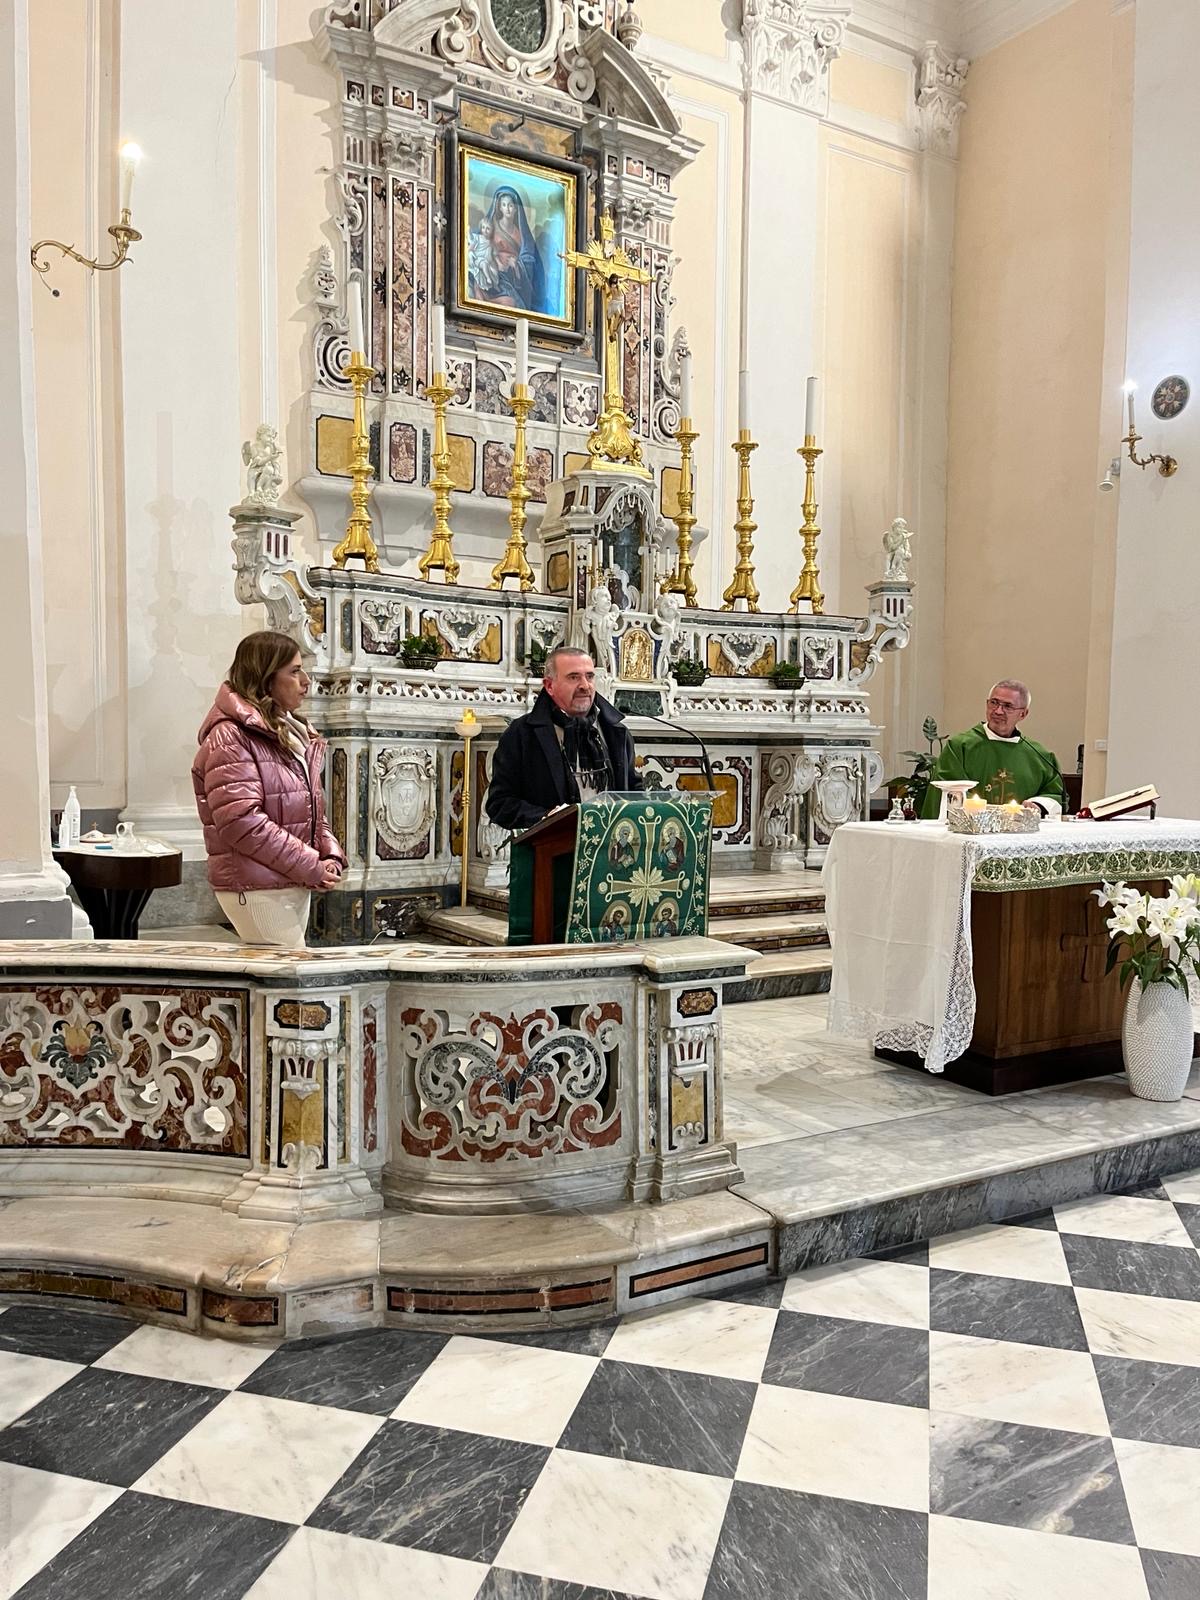 Nella chiesa del Carmine, a Pozzuoli, si è presentato ANCHE IN CARCERE VIENE NATALE di Giovanna Di Francia